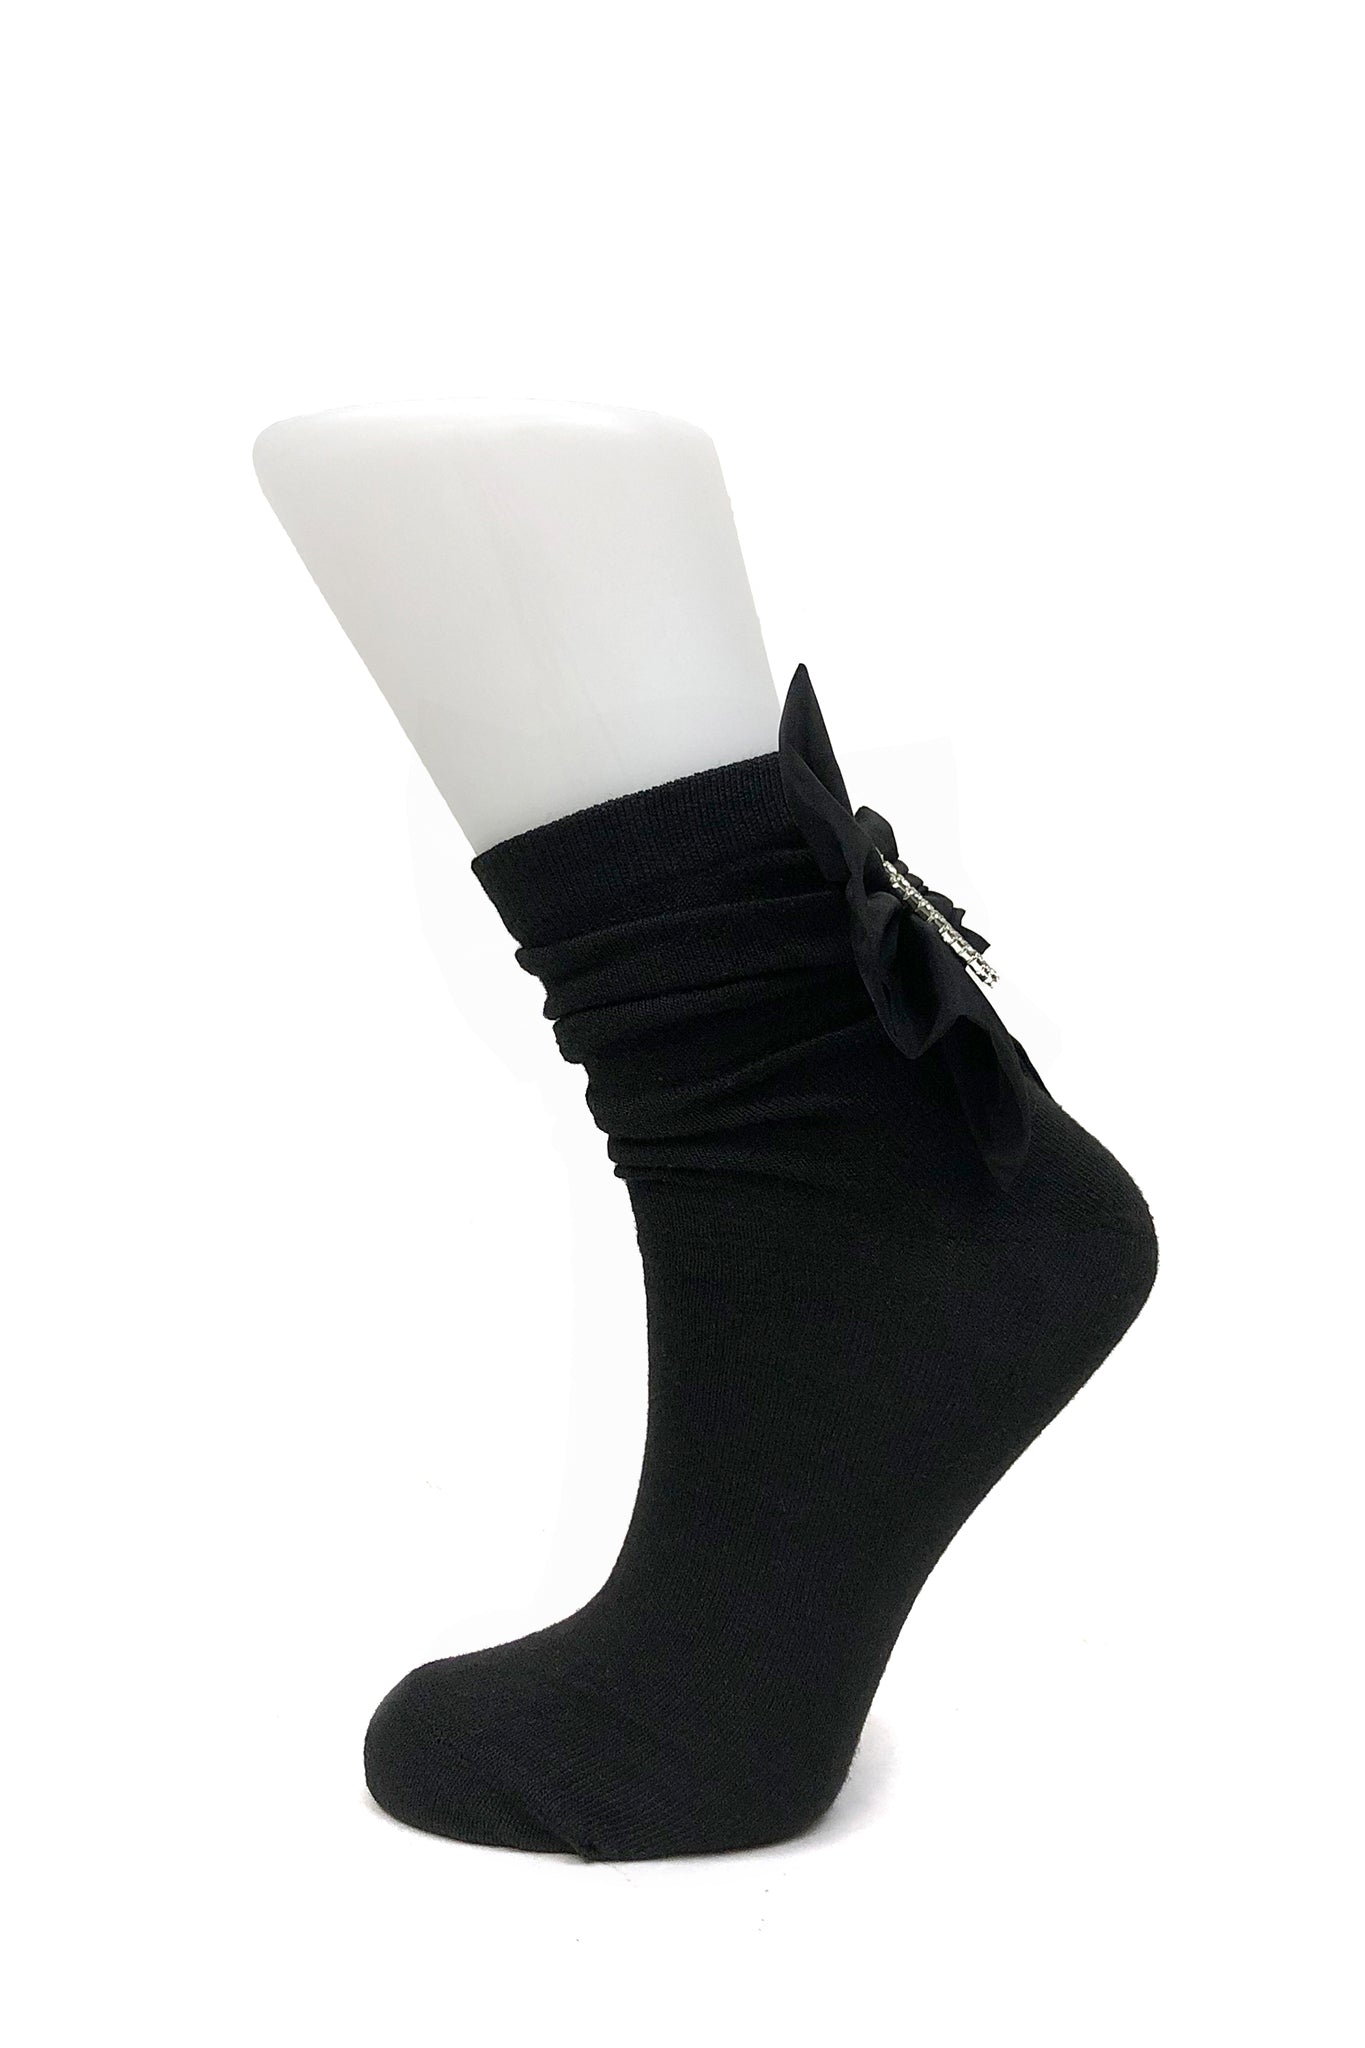 Merrfer Bow Socks, Black